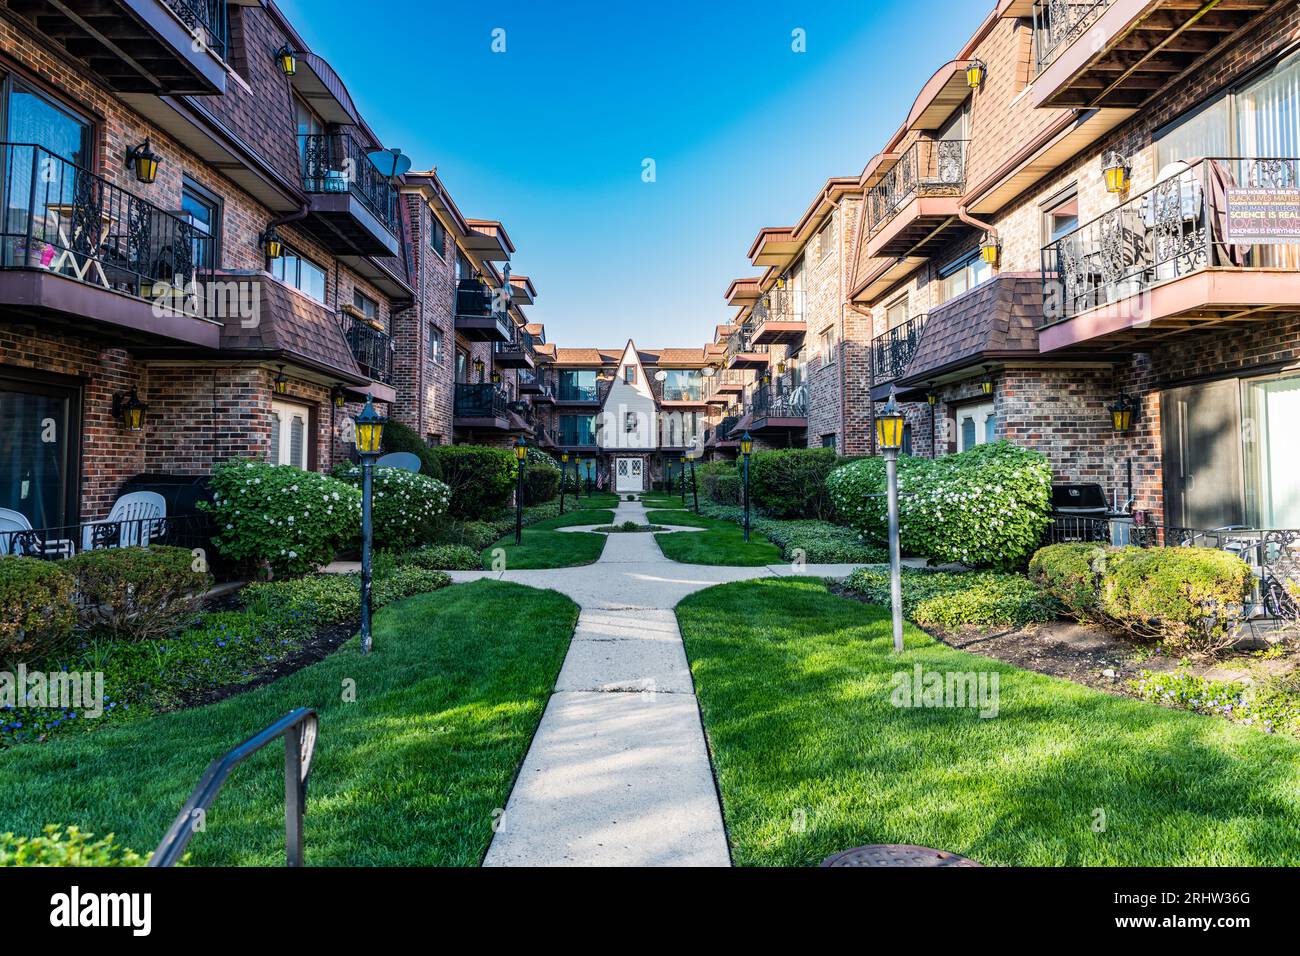 property in neighborhood. view of luxury upscale residential neighborhood community street. property insurance and real estate. suburban neighborhood. Stock Photo